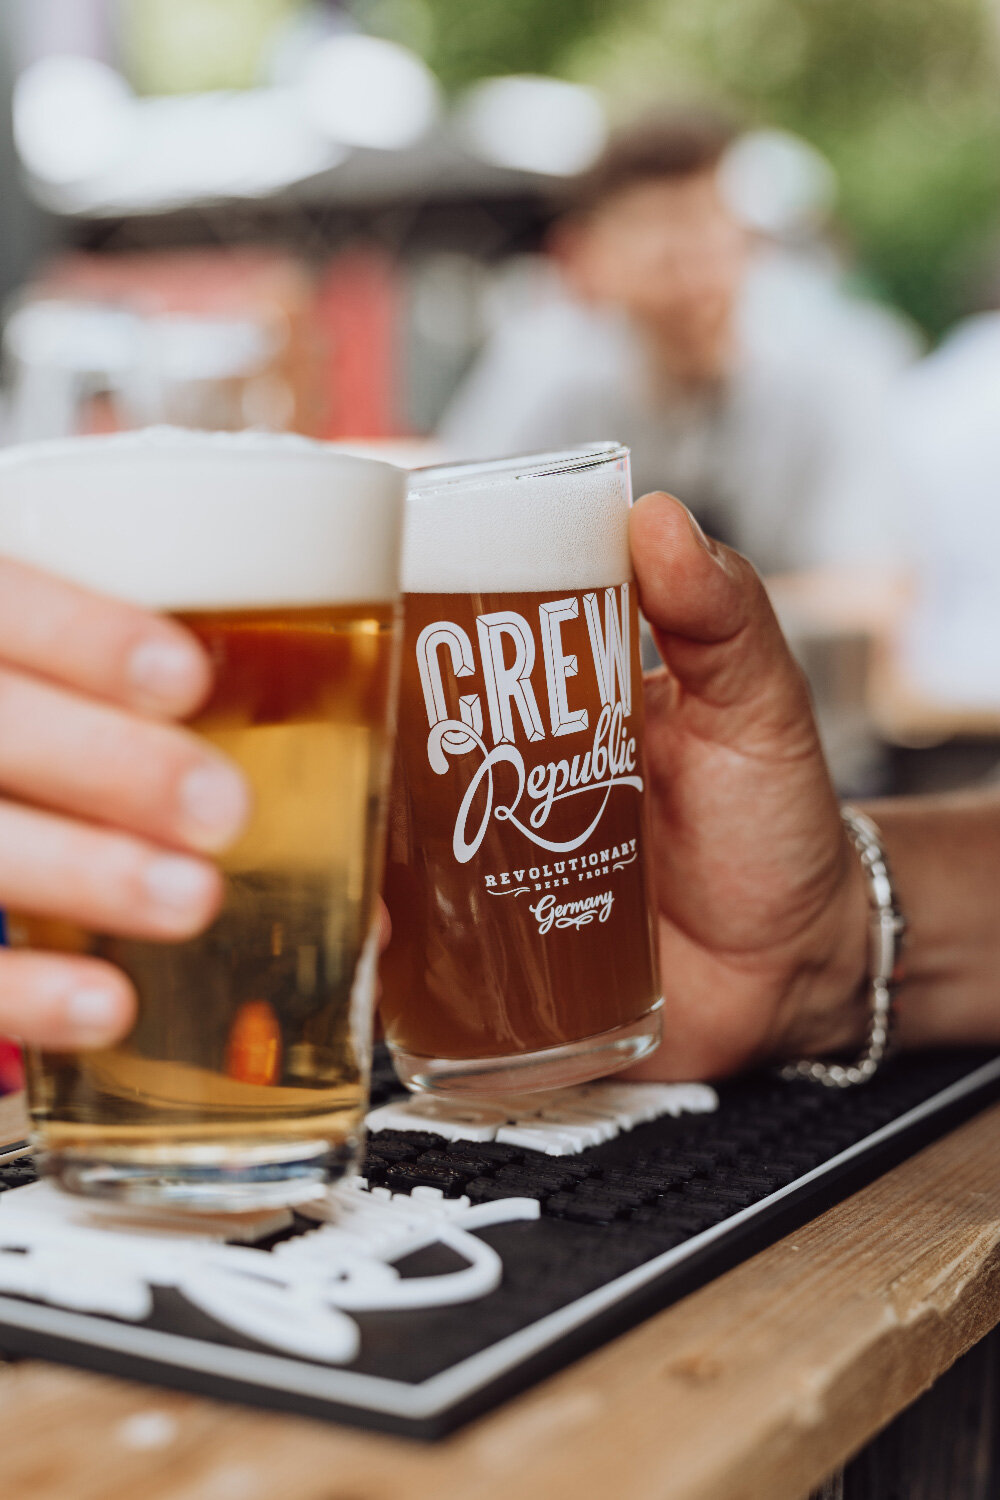 Anstossen zweier Gläser mit Crew Republic Bier